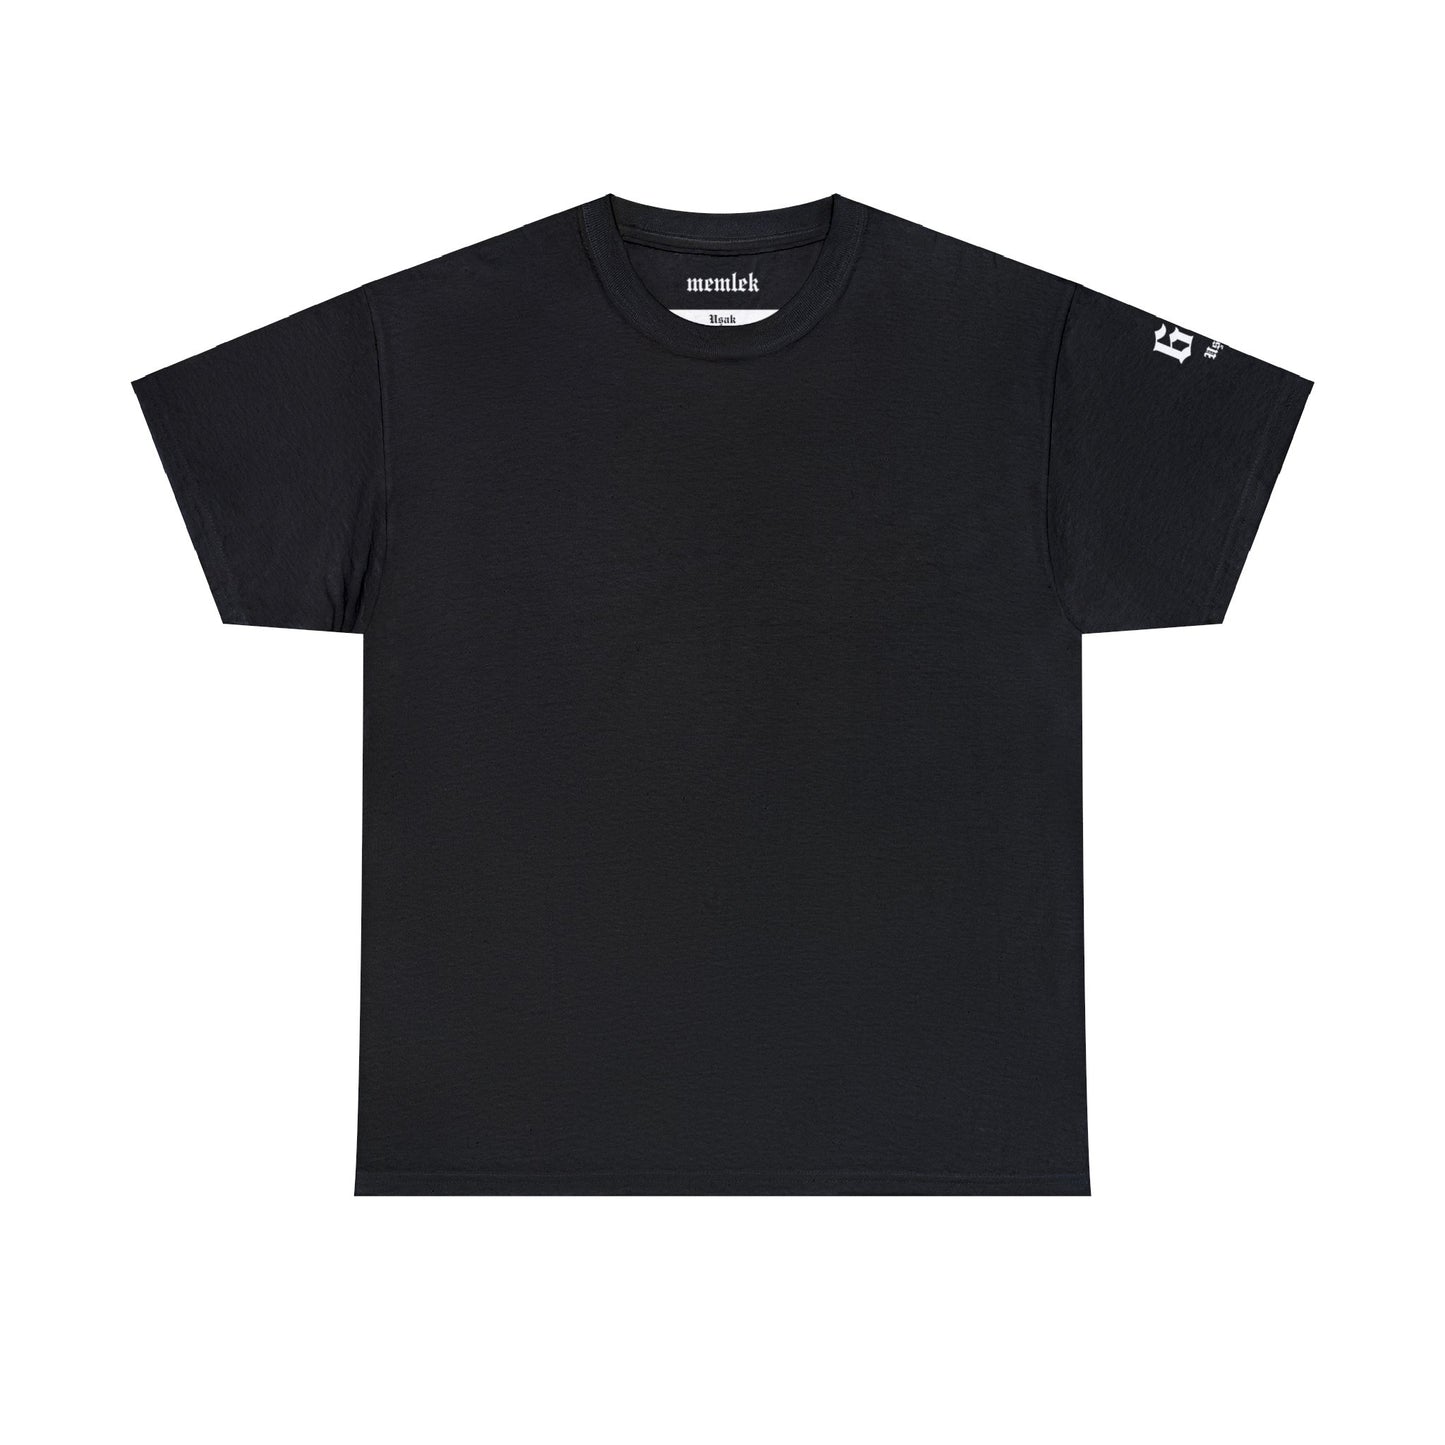 İlçem - 64 Uşak - T-Shirt - Back Print - Black